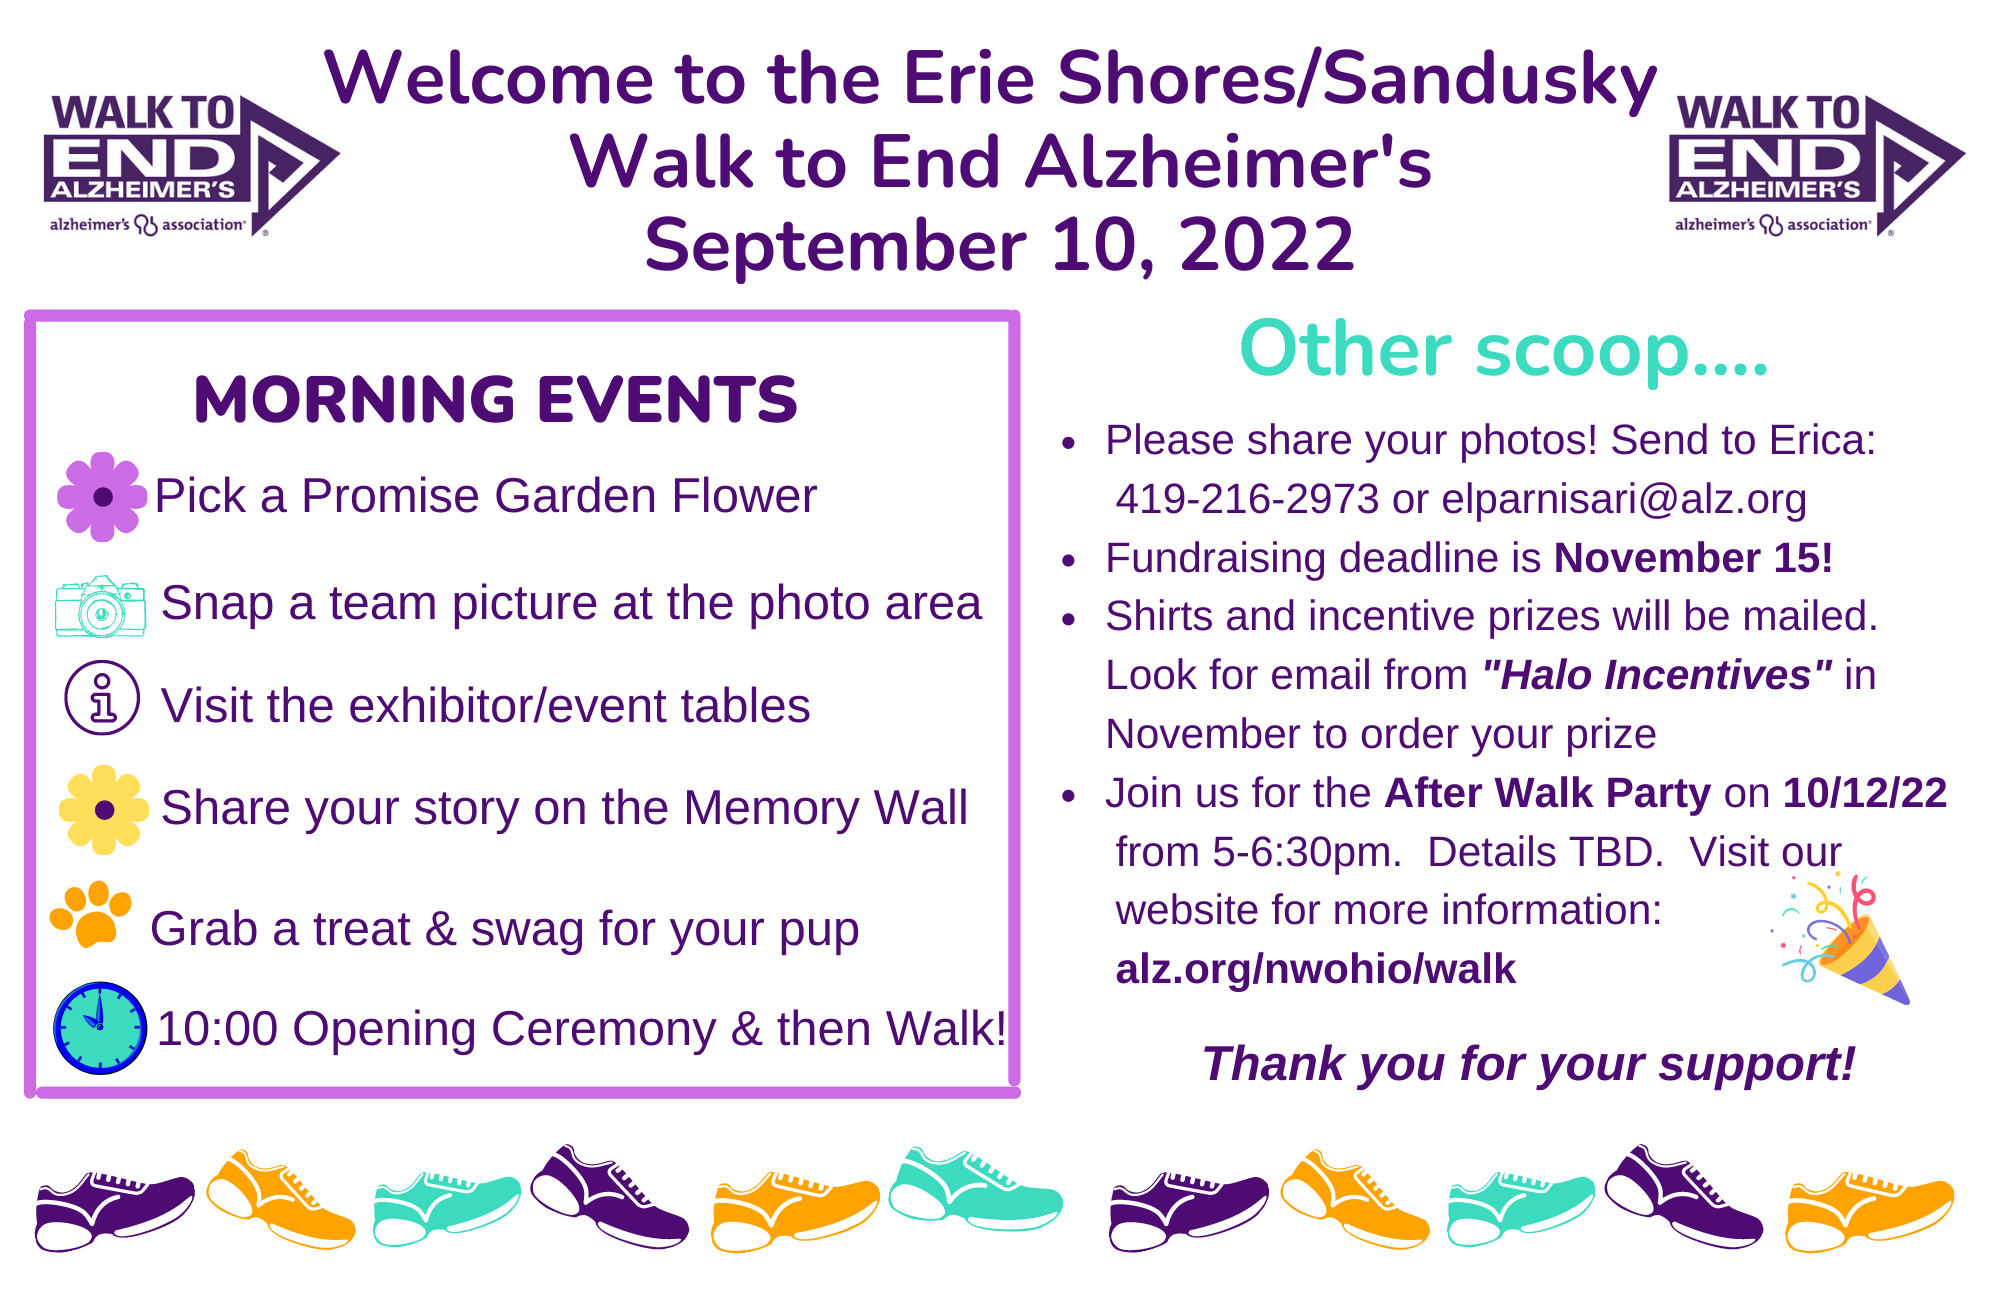 Calendario del día del evento Erie Shores 2022